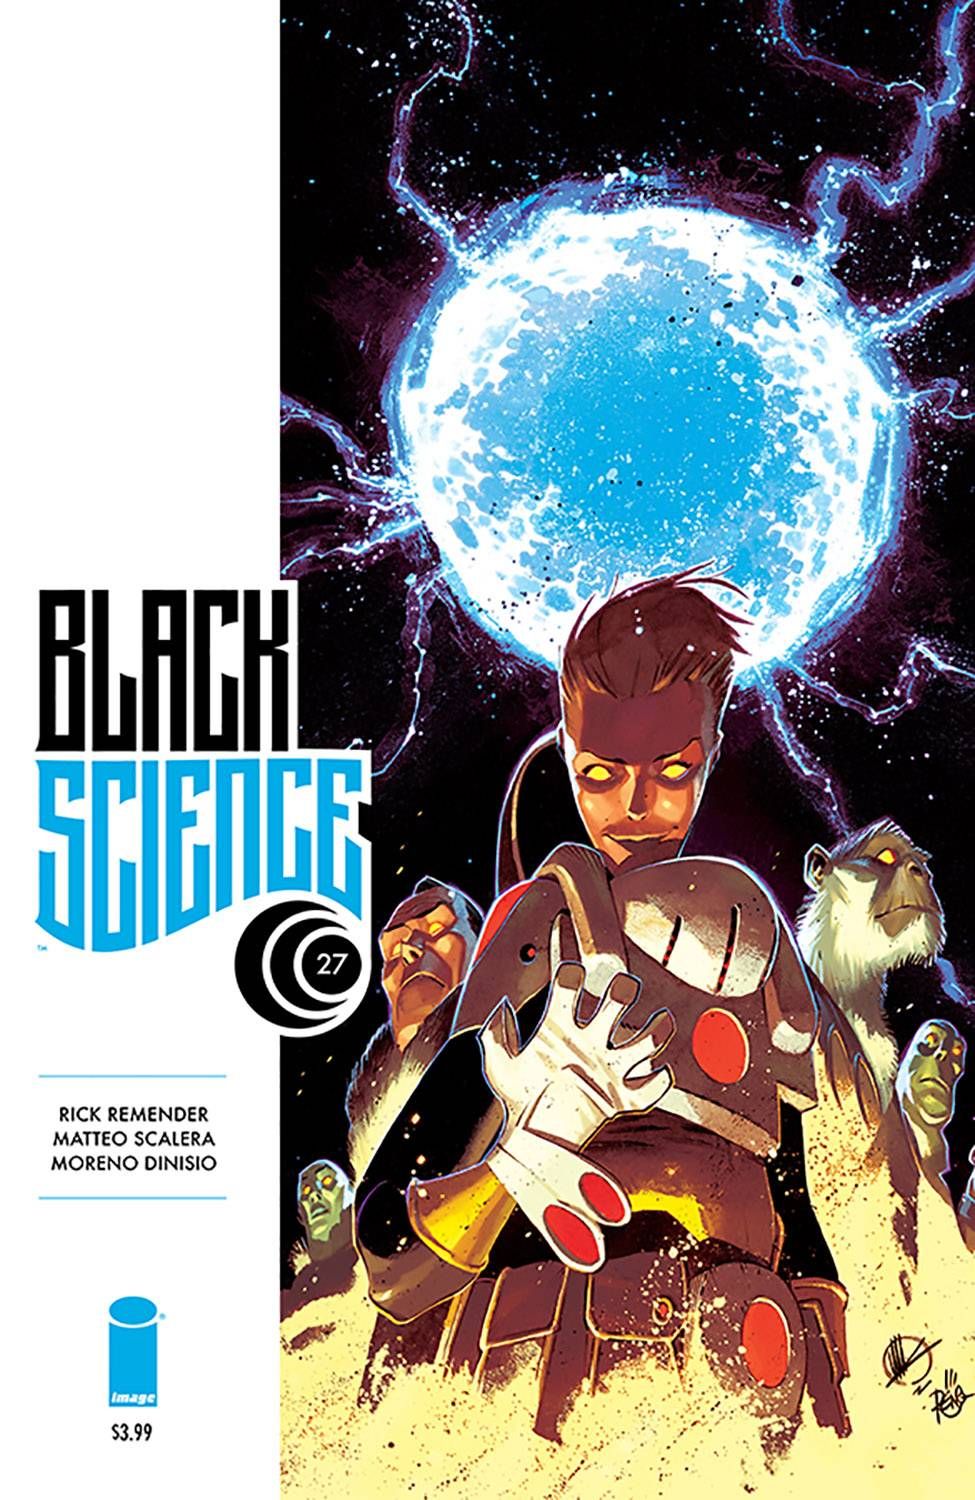 Black Science #27 Comic